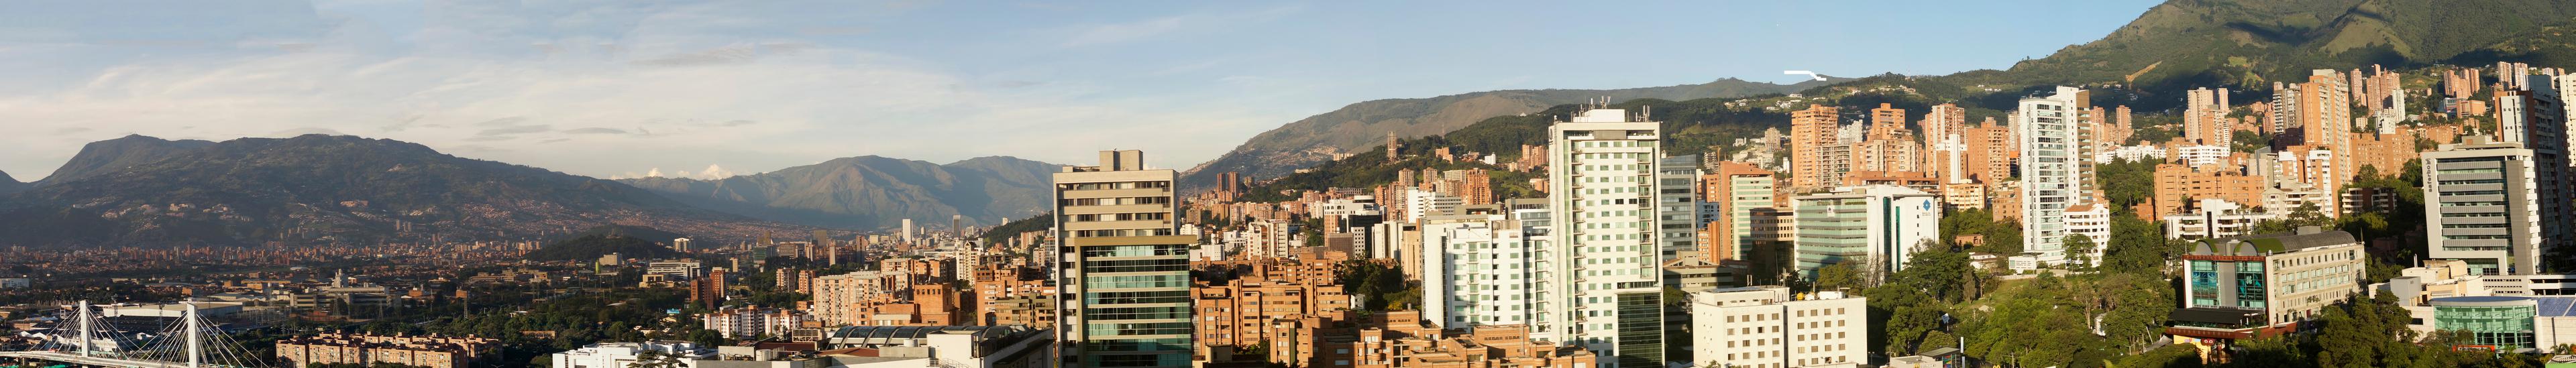 Banner image for Medellín on GigsGuide